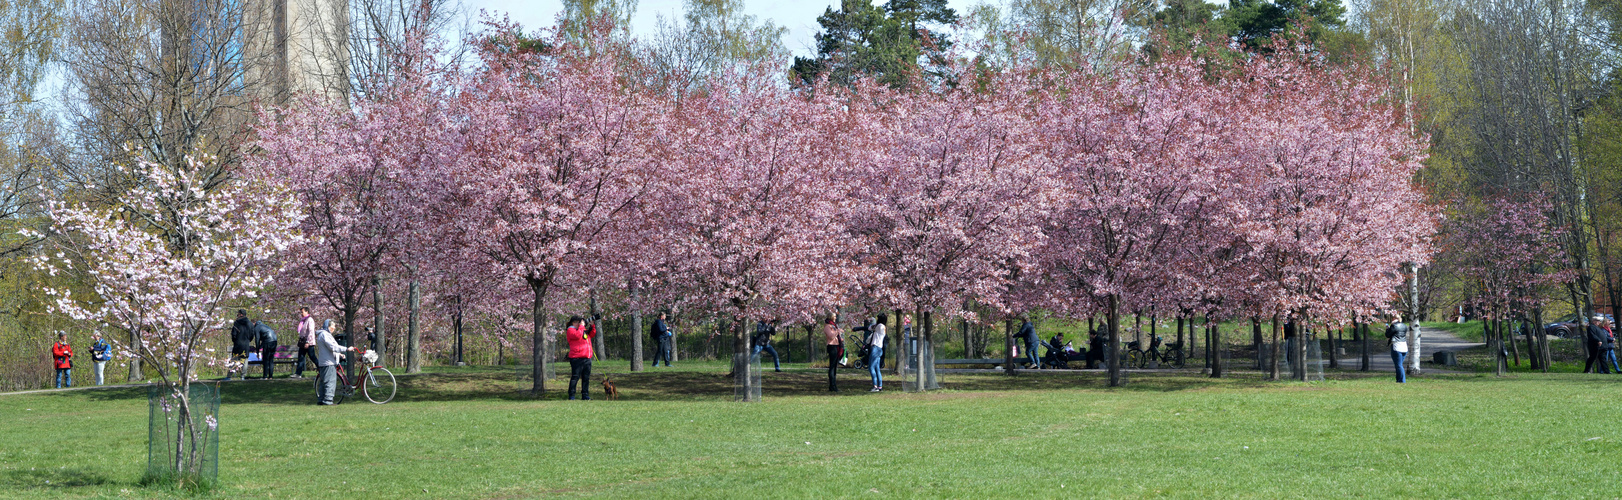 Helsinki, Roihuvuori cherrytrees